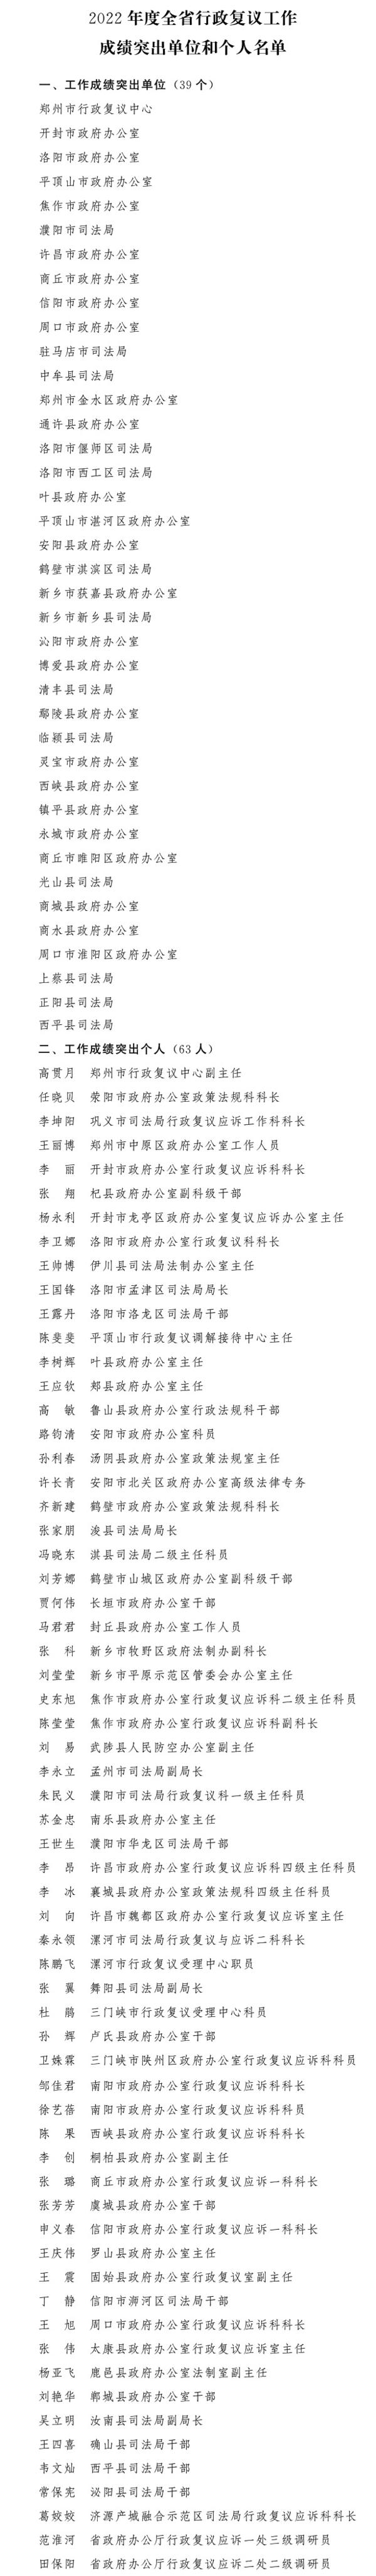 河南省人民政府办公厅关于表扬2022年度全省行政复议工作成绩突出单位和个人的通报